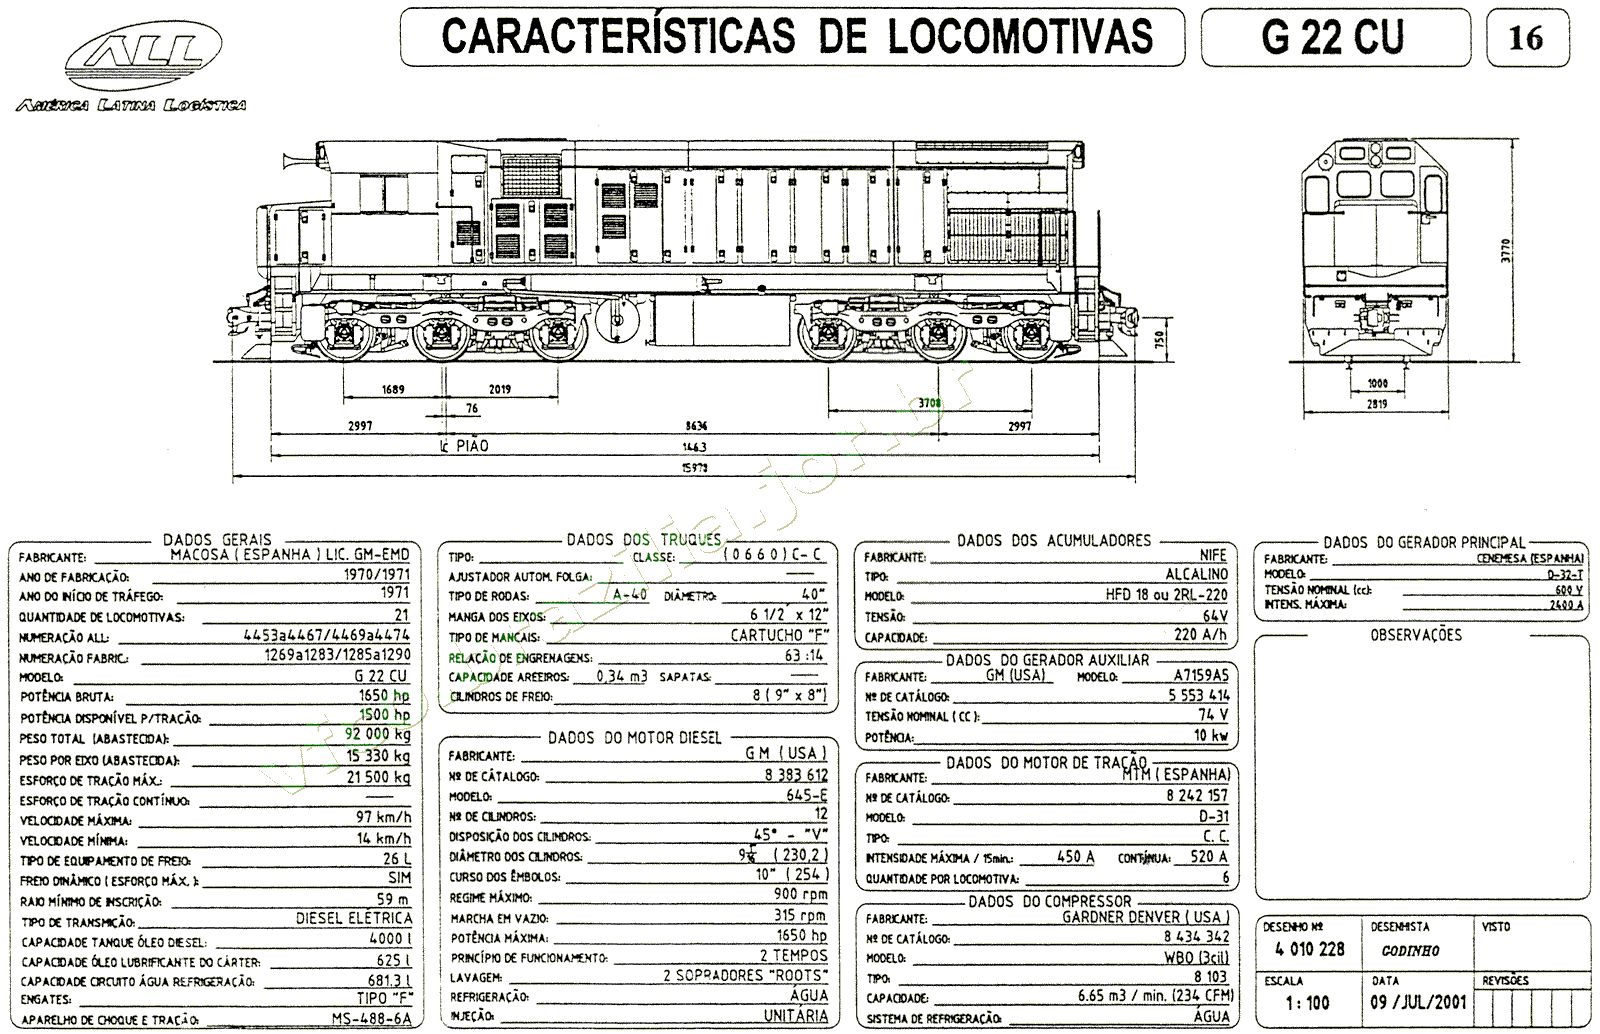 Desenho e especificações da Locomotiva G22CU nº 4453-4474 da ferrovia ALL